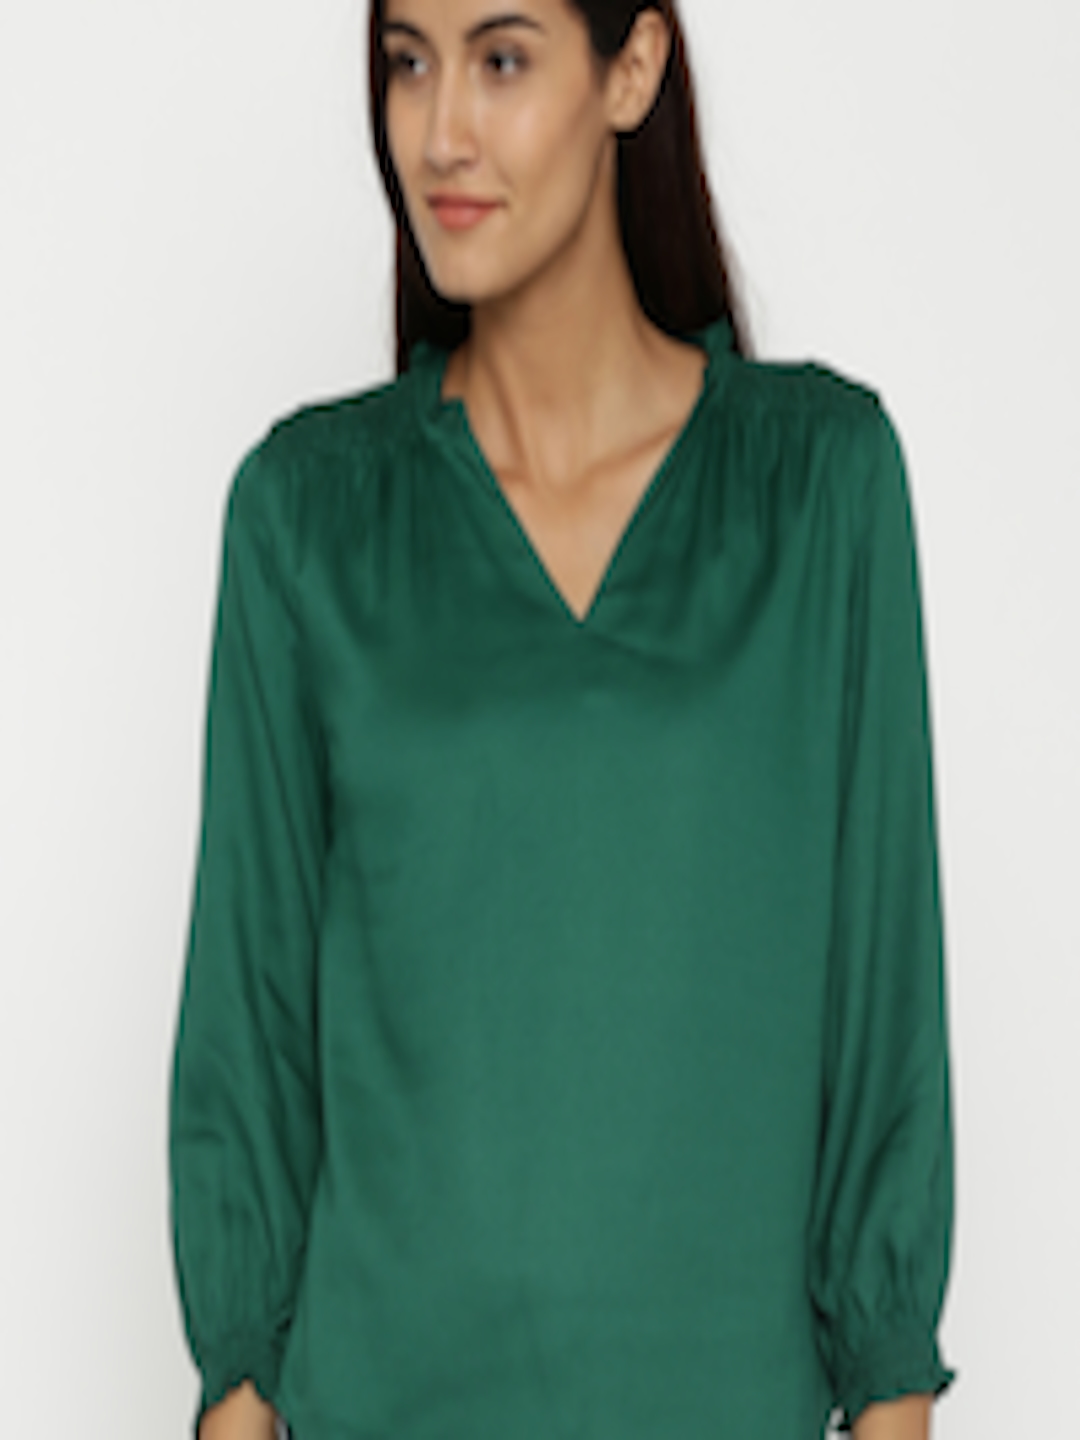 Buy Van Heusen Woman Green Top - Tops for Women 1459718 | Myntra